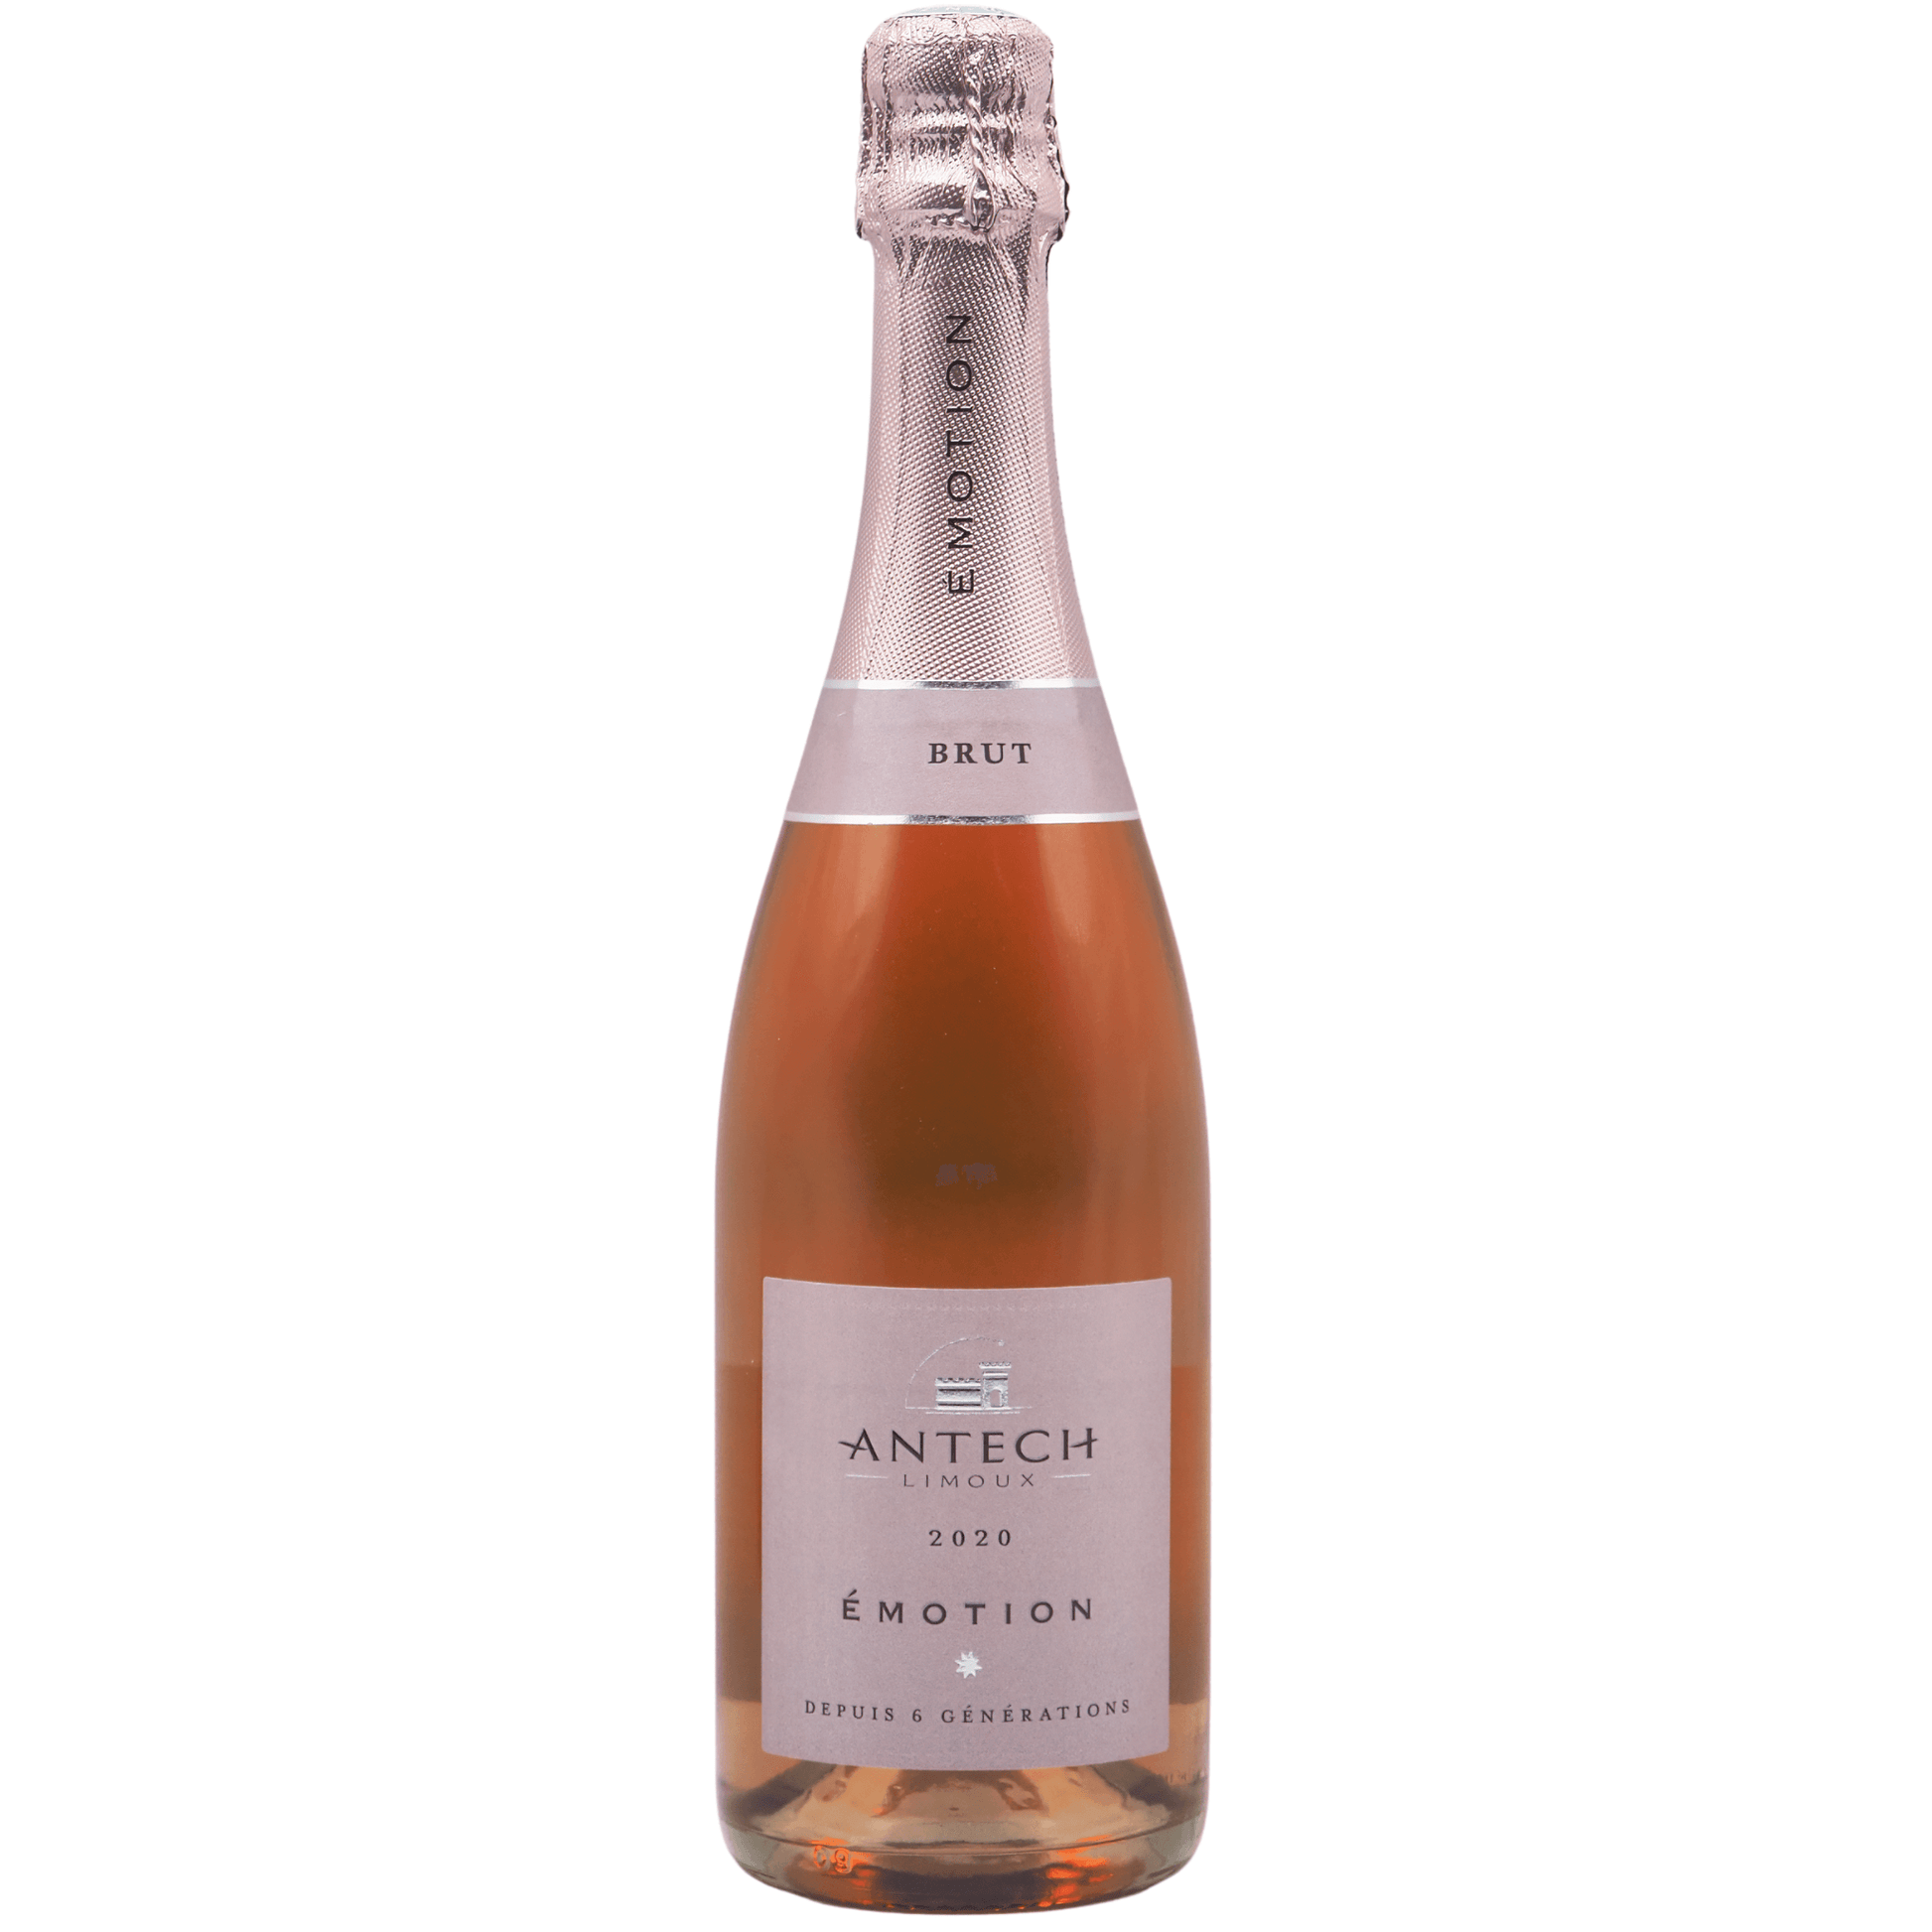 Bottiglia di Cremant de Limoux rosè Emotion brut millesimato Antech da 0,75 l.